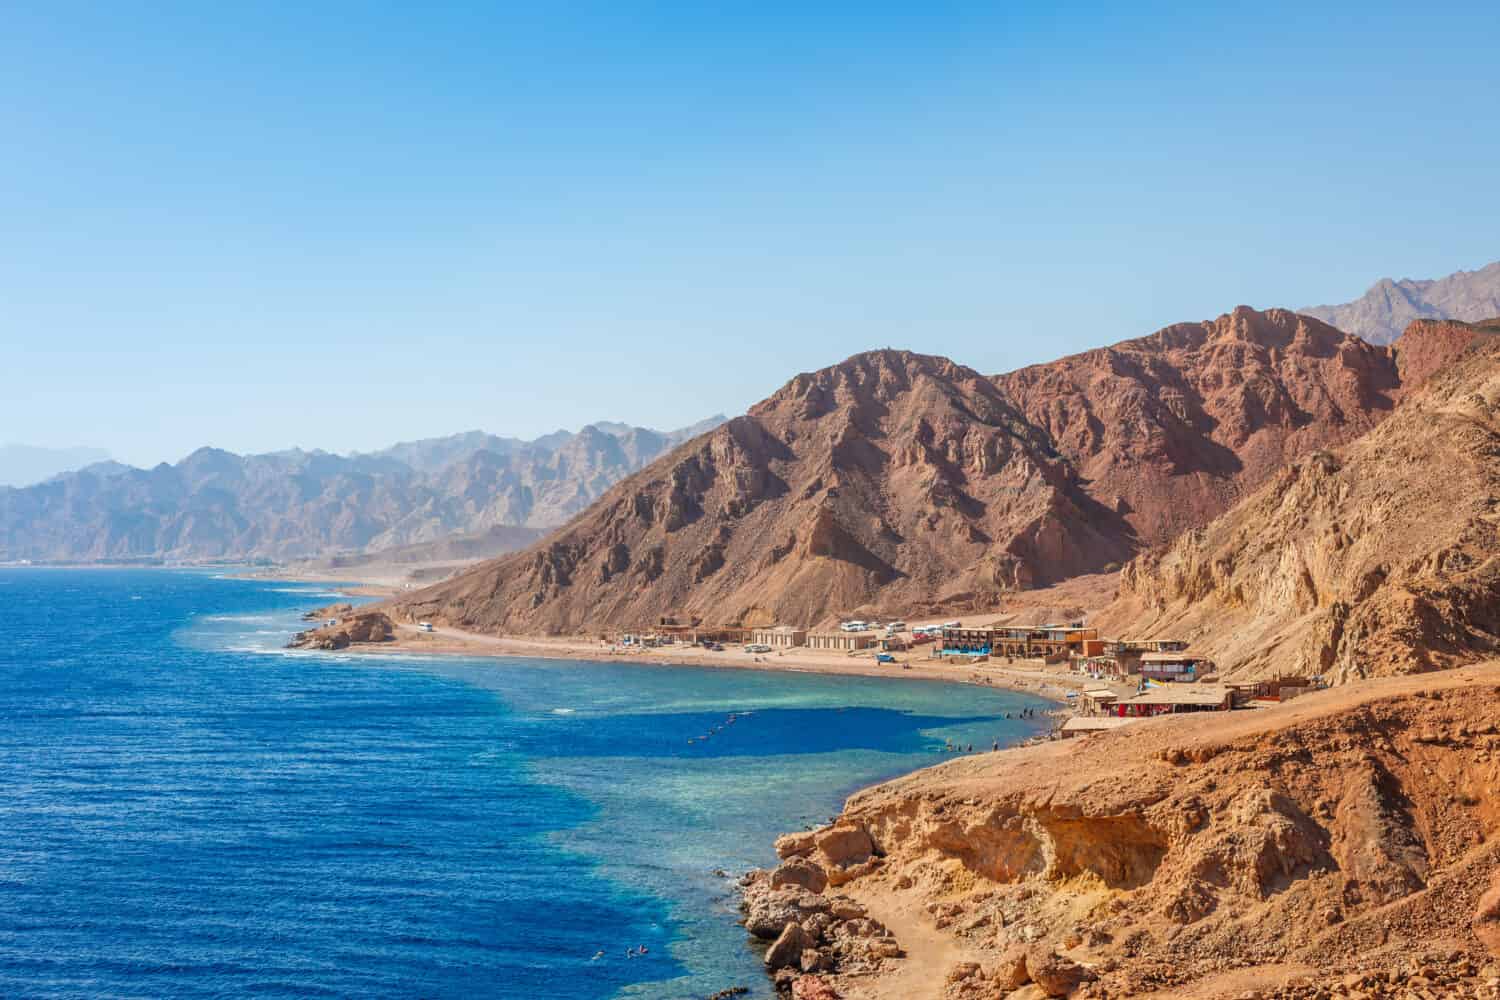 Sunny resort beach presso la costa del Mar Rosso a Dahab, Sinai, Egitto, Asia in estate calda.  Famosa destinazione turistica Blue Hole vicino a Sharm el Sheikh.  Brillante luce solare